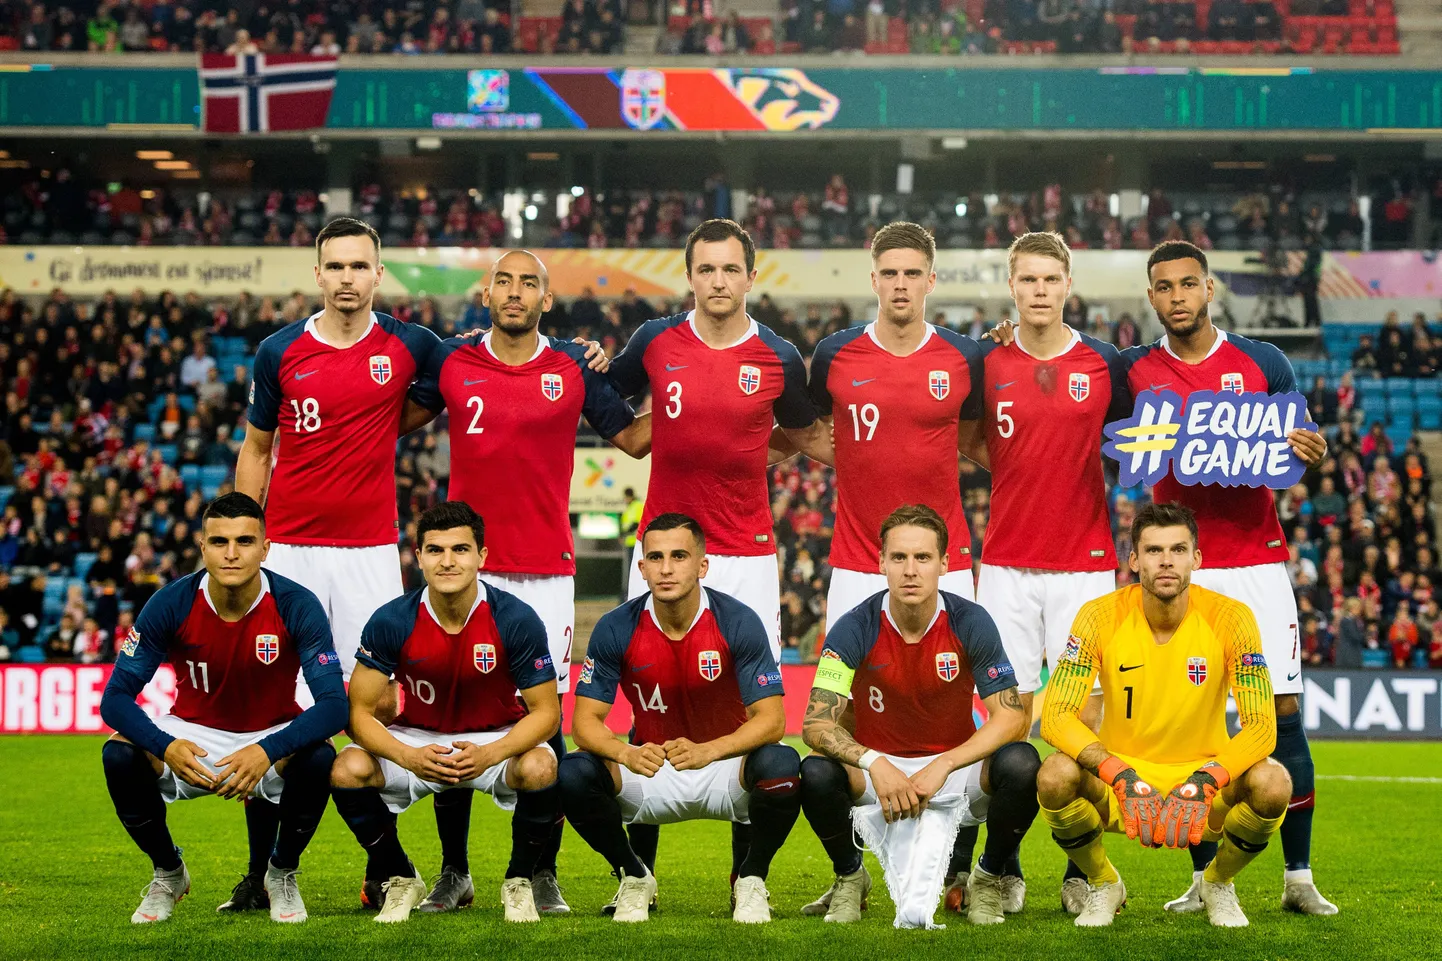 Norra jalgpallikoondis 2018. aastal.